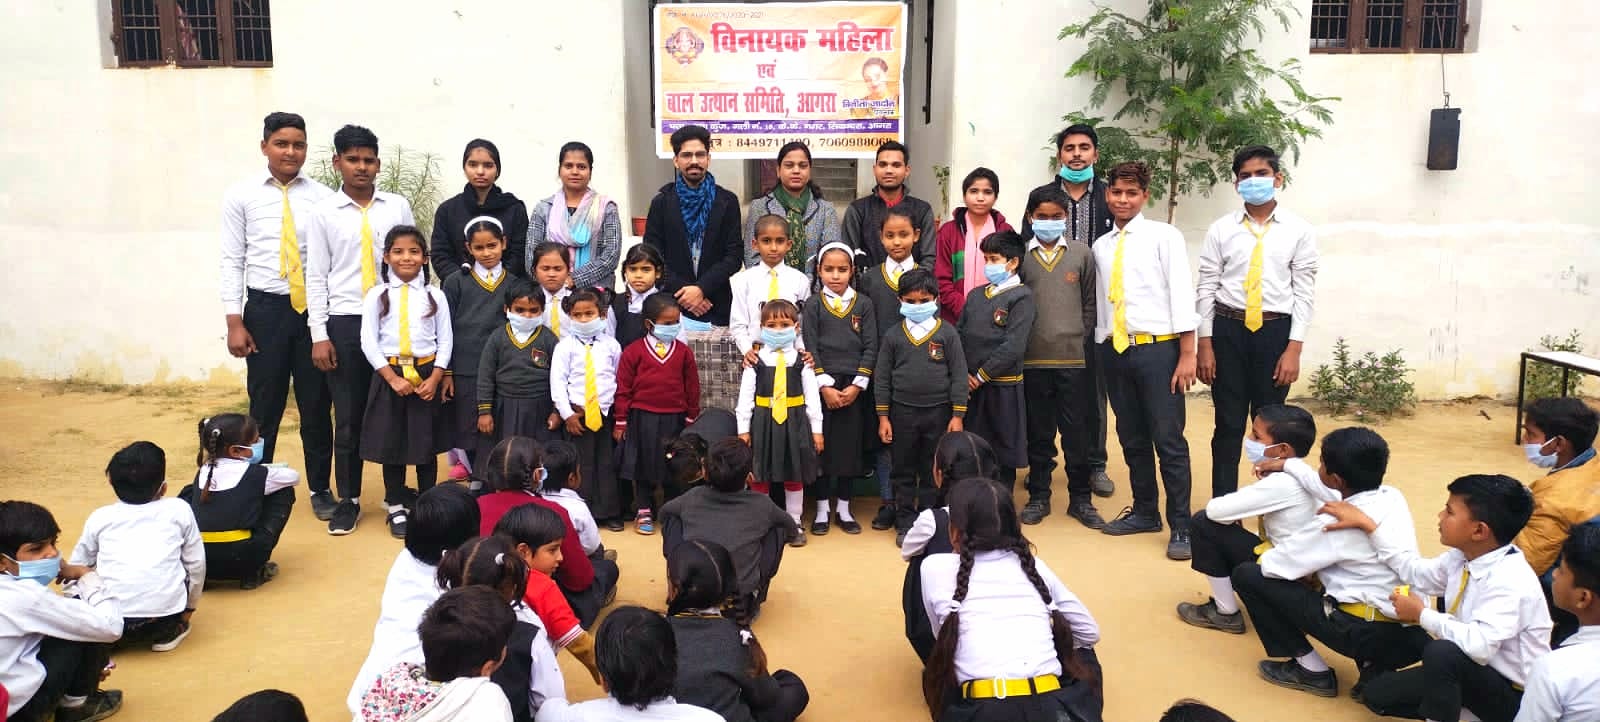 संस्था विनायक महिला बाल उत्थान समिति द्वारा ए. बी. पब्लिक स्कूल रुनकता में अवेयरनेस प्रोग्राम का किया गया आयोजन | New India Times